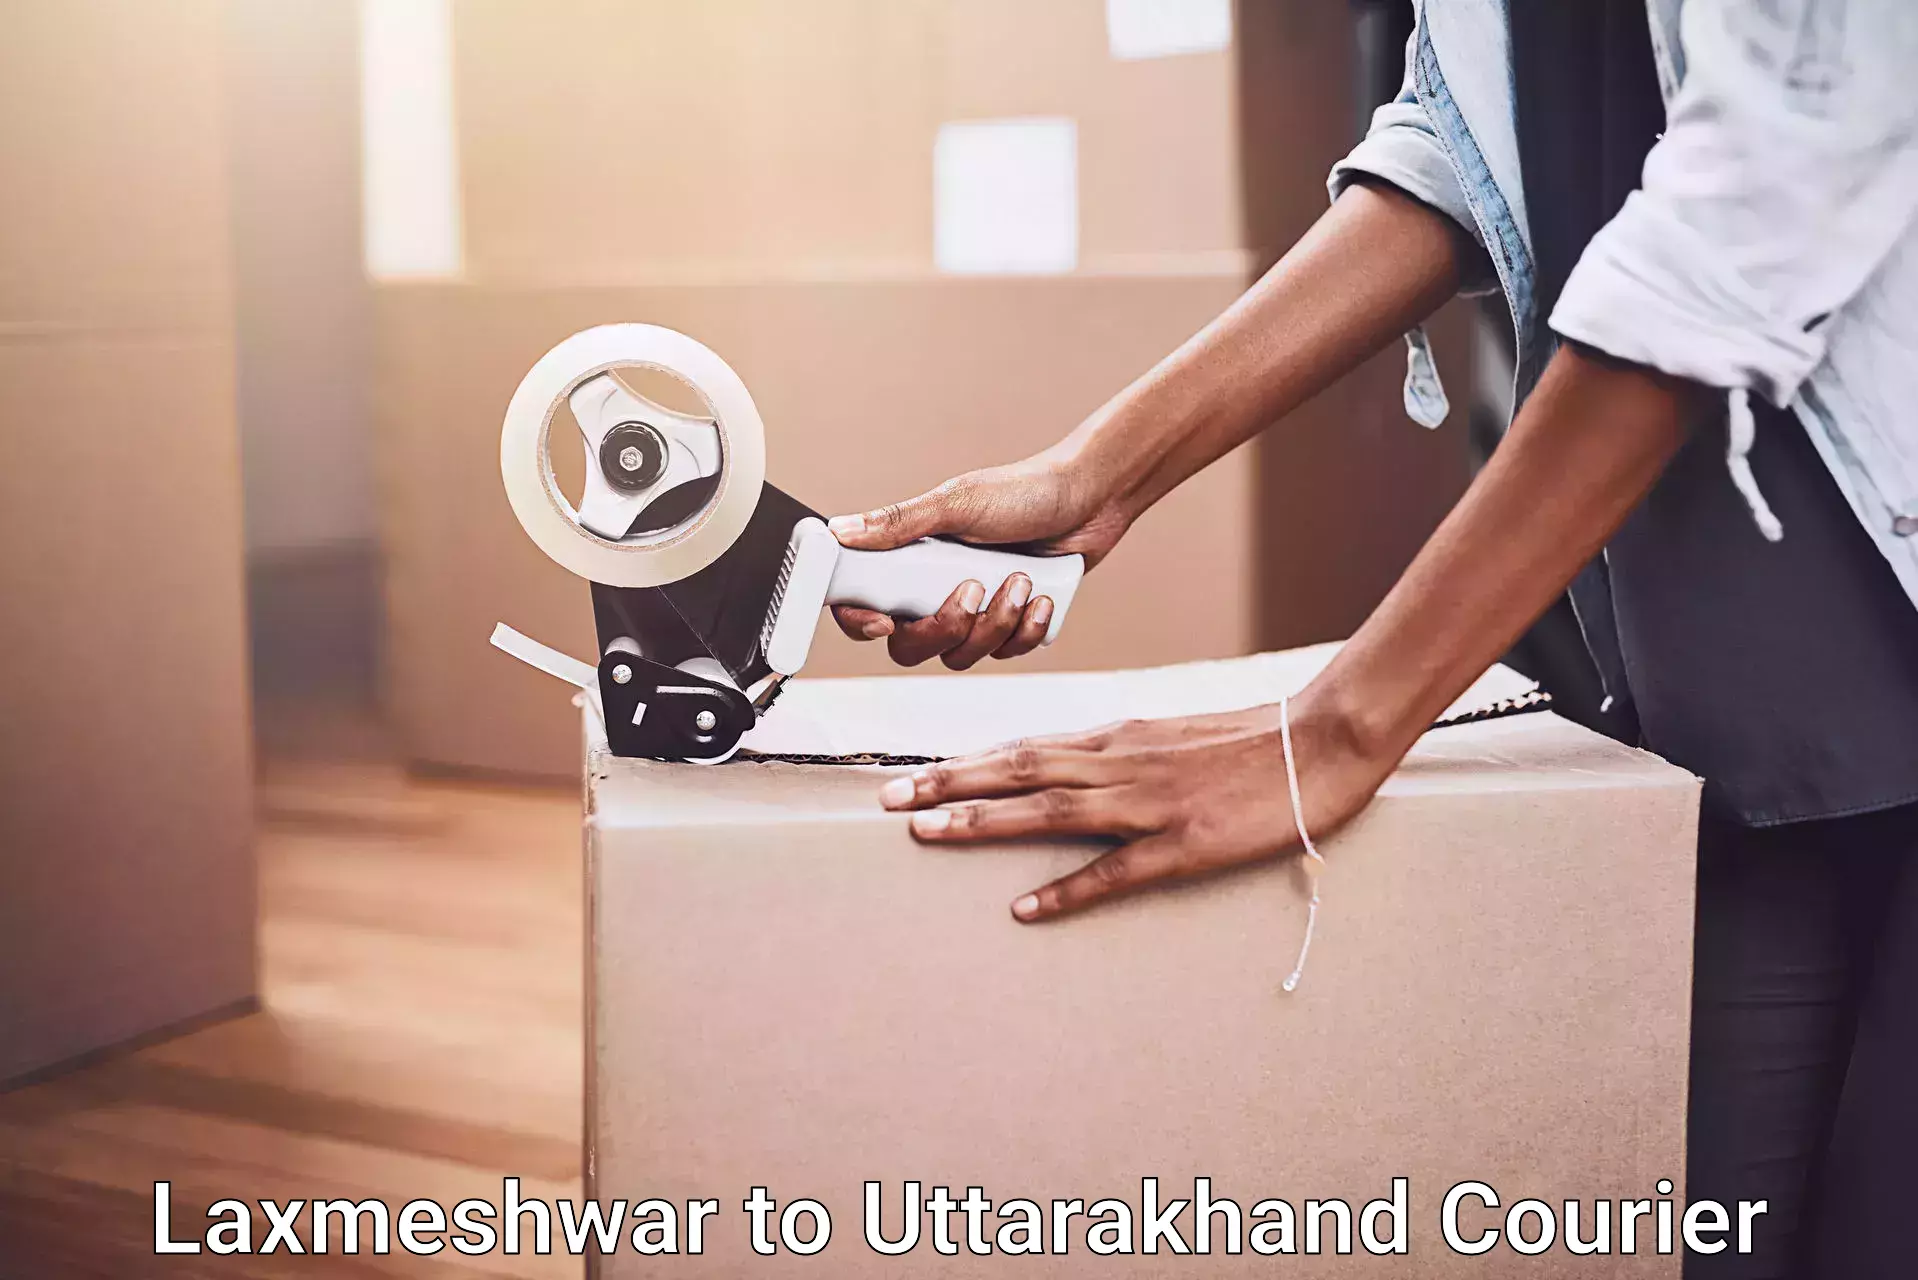 Trusted moving company Laxmeshwar to Uttarakhand